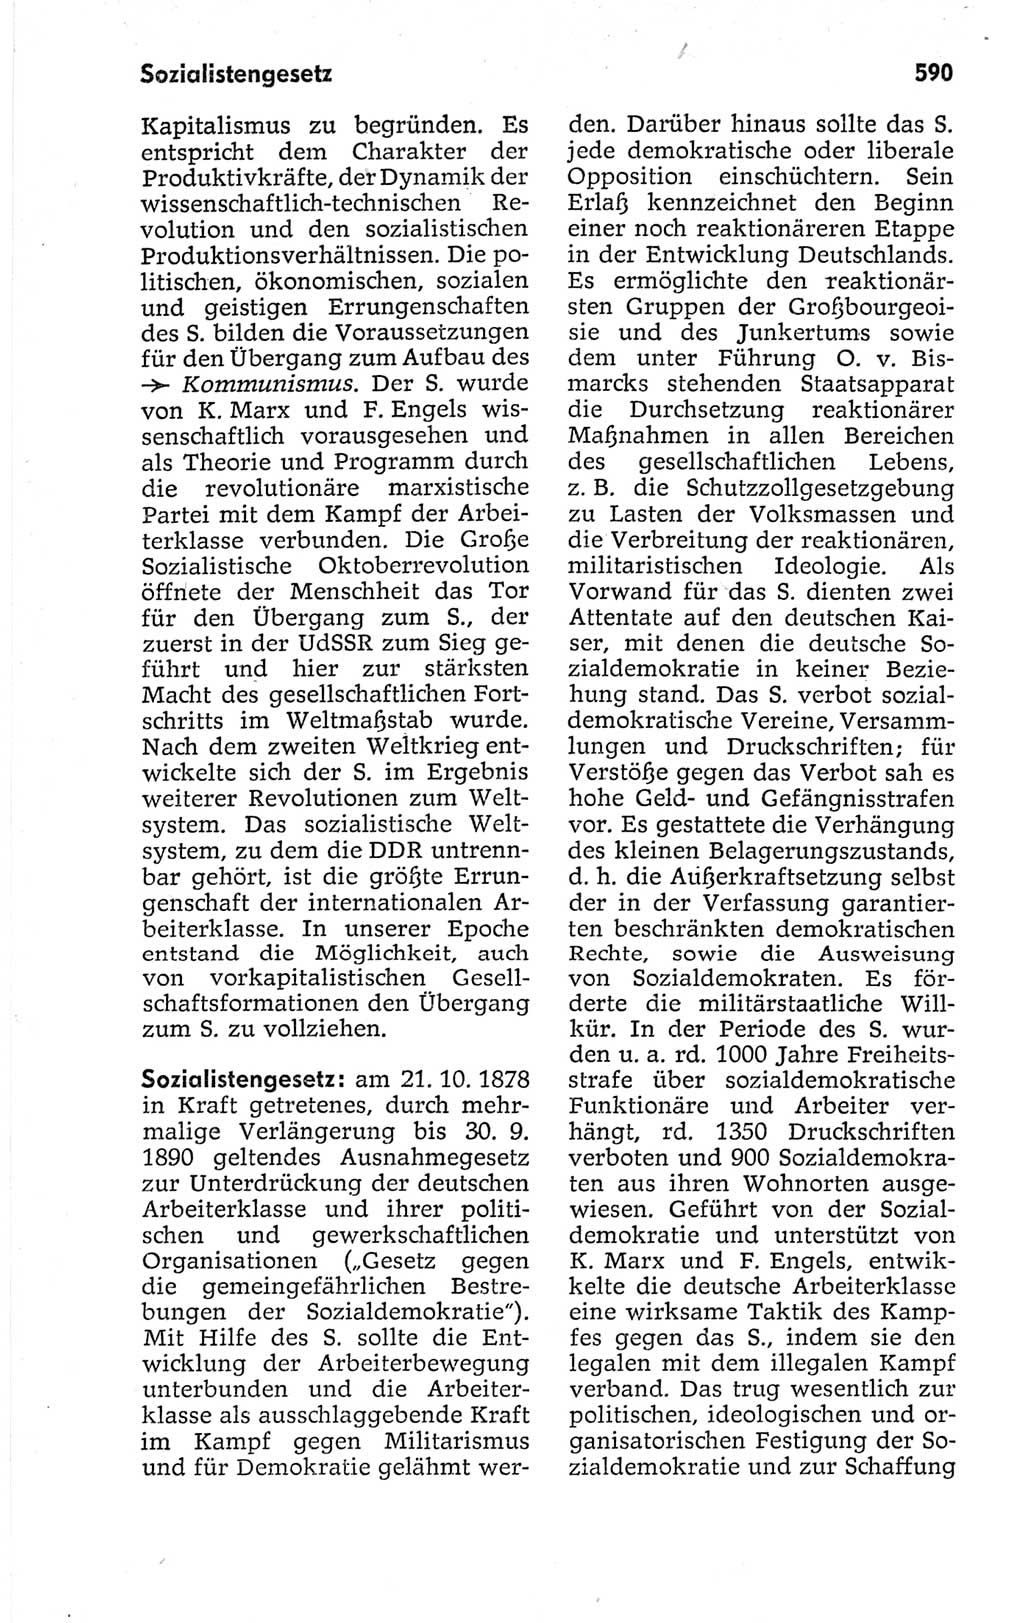 Kleines politisches Wörterbuch [Deutsche Demokratische Republik (DDR)] 1967, Seite 590 (Kl. pol. Wb. DDR 1967, S. 590)